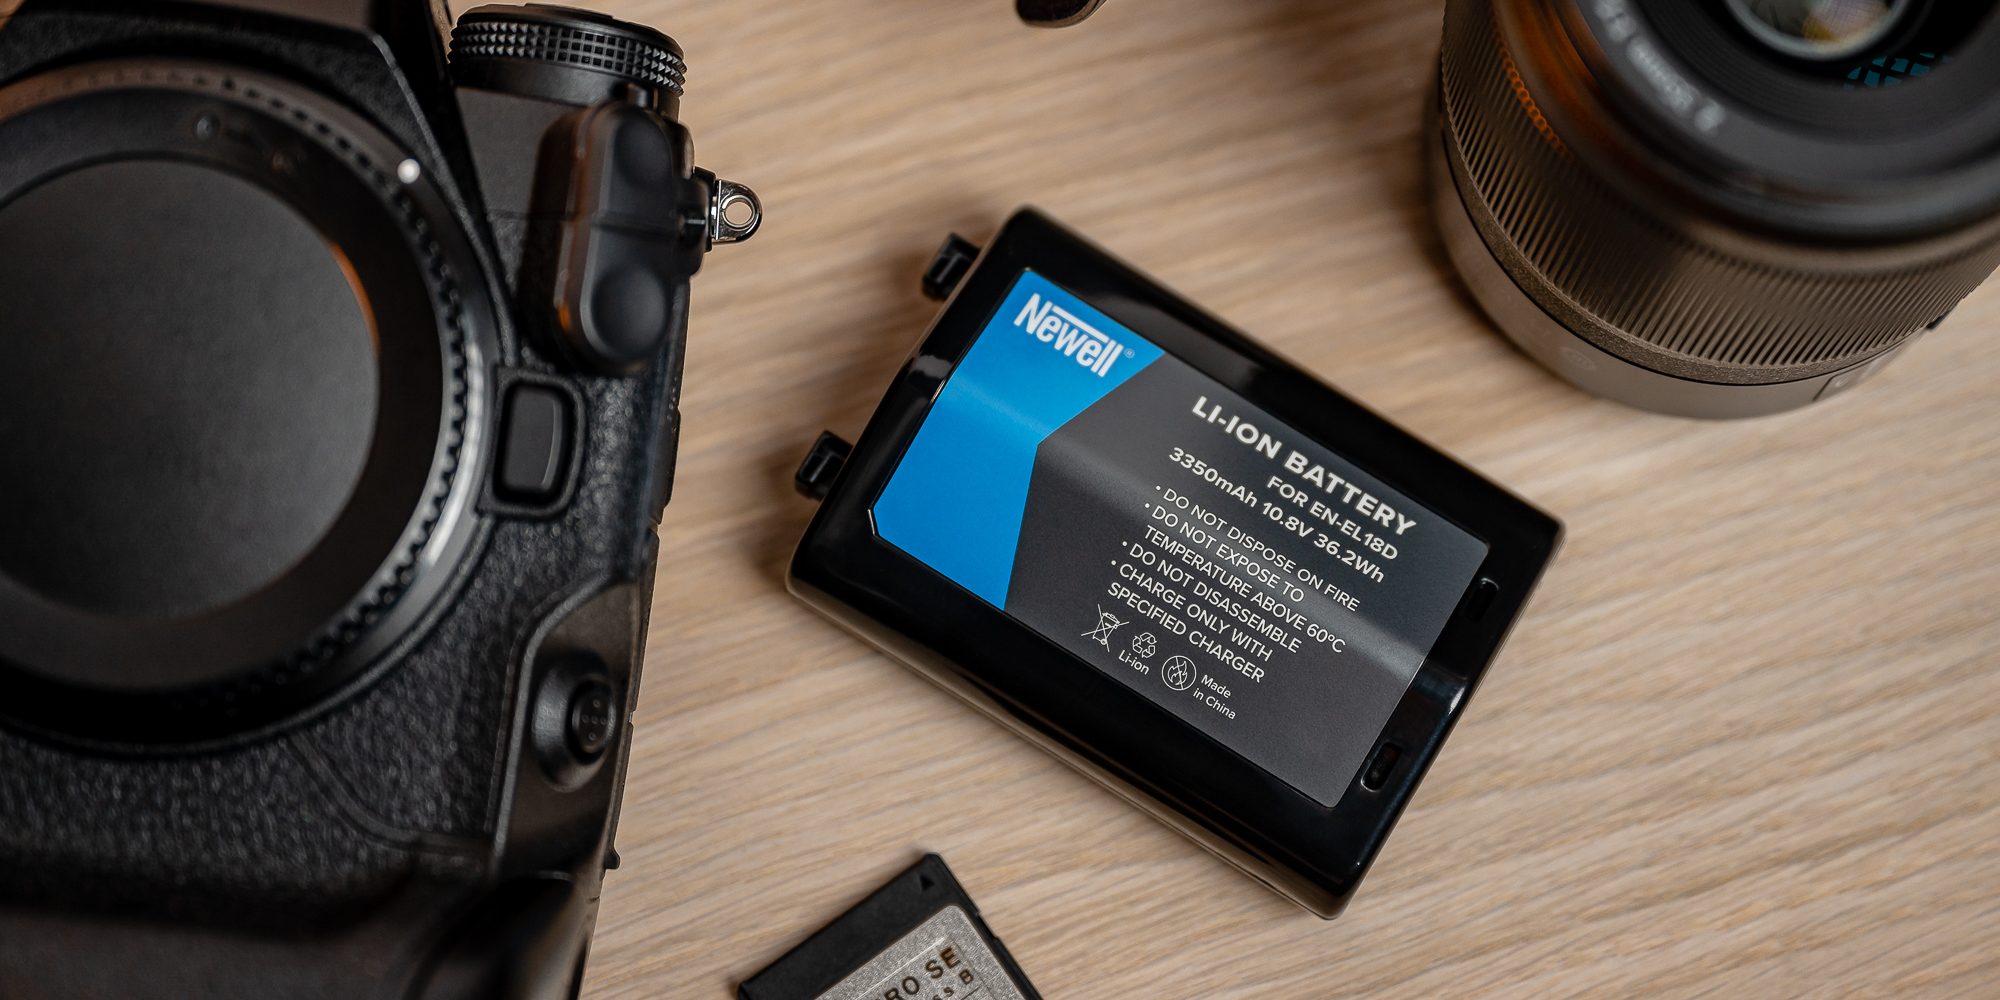 Akumulator Newell zamiennik EN-EL18d do Nikon